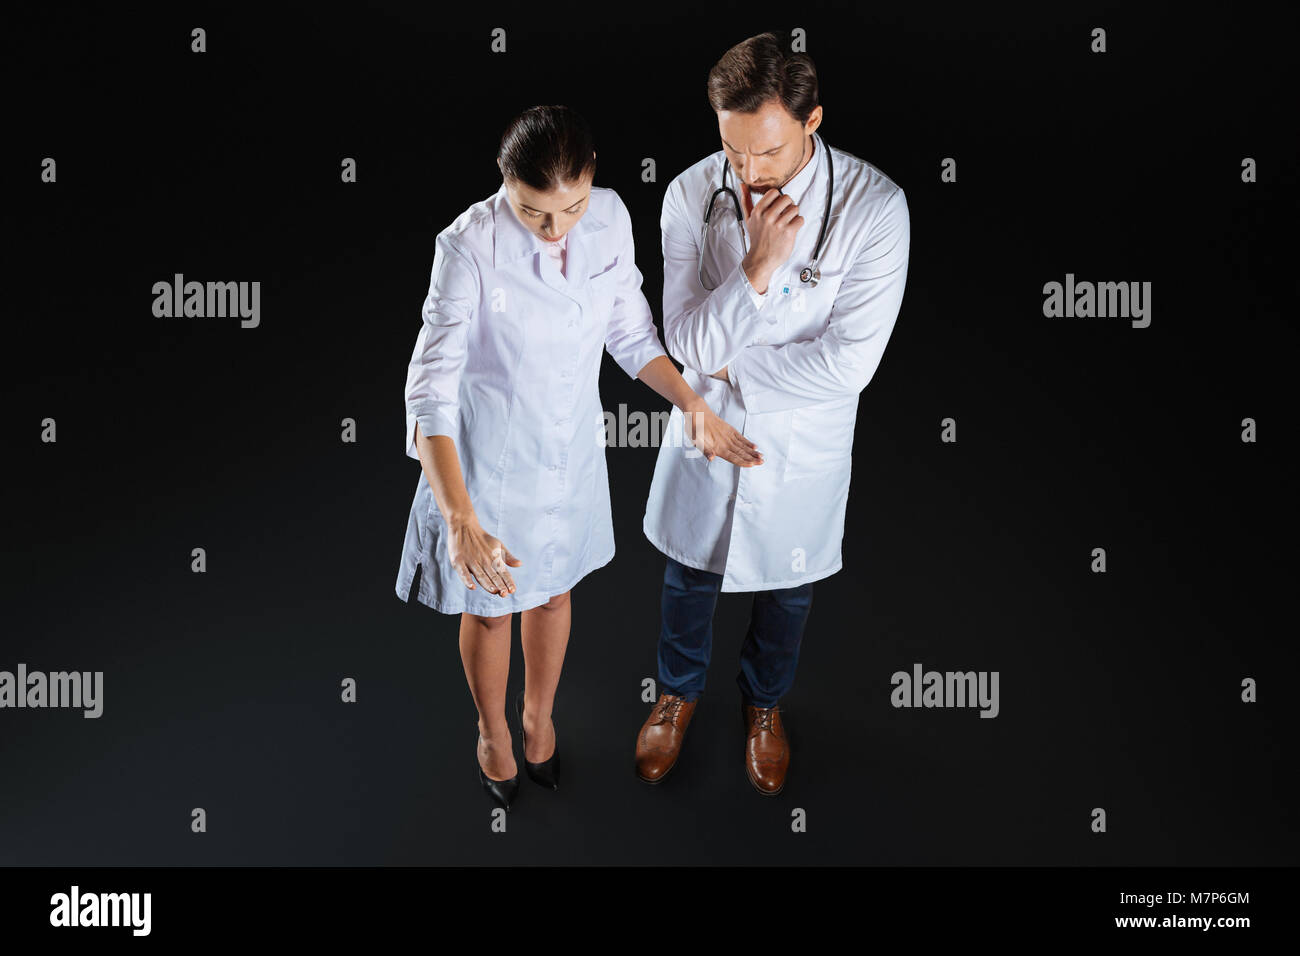 Kreative angenehme Krankenschwester gestikulierend und kommuniziert. Stockfoto